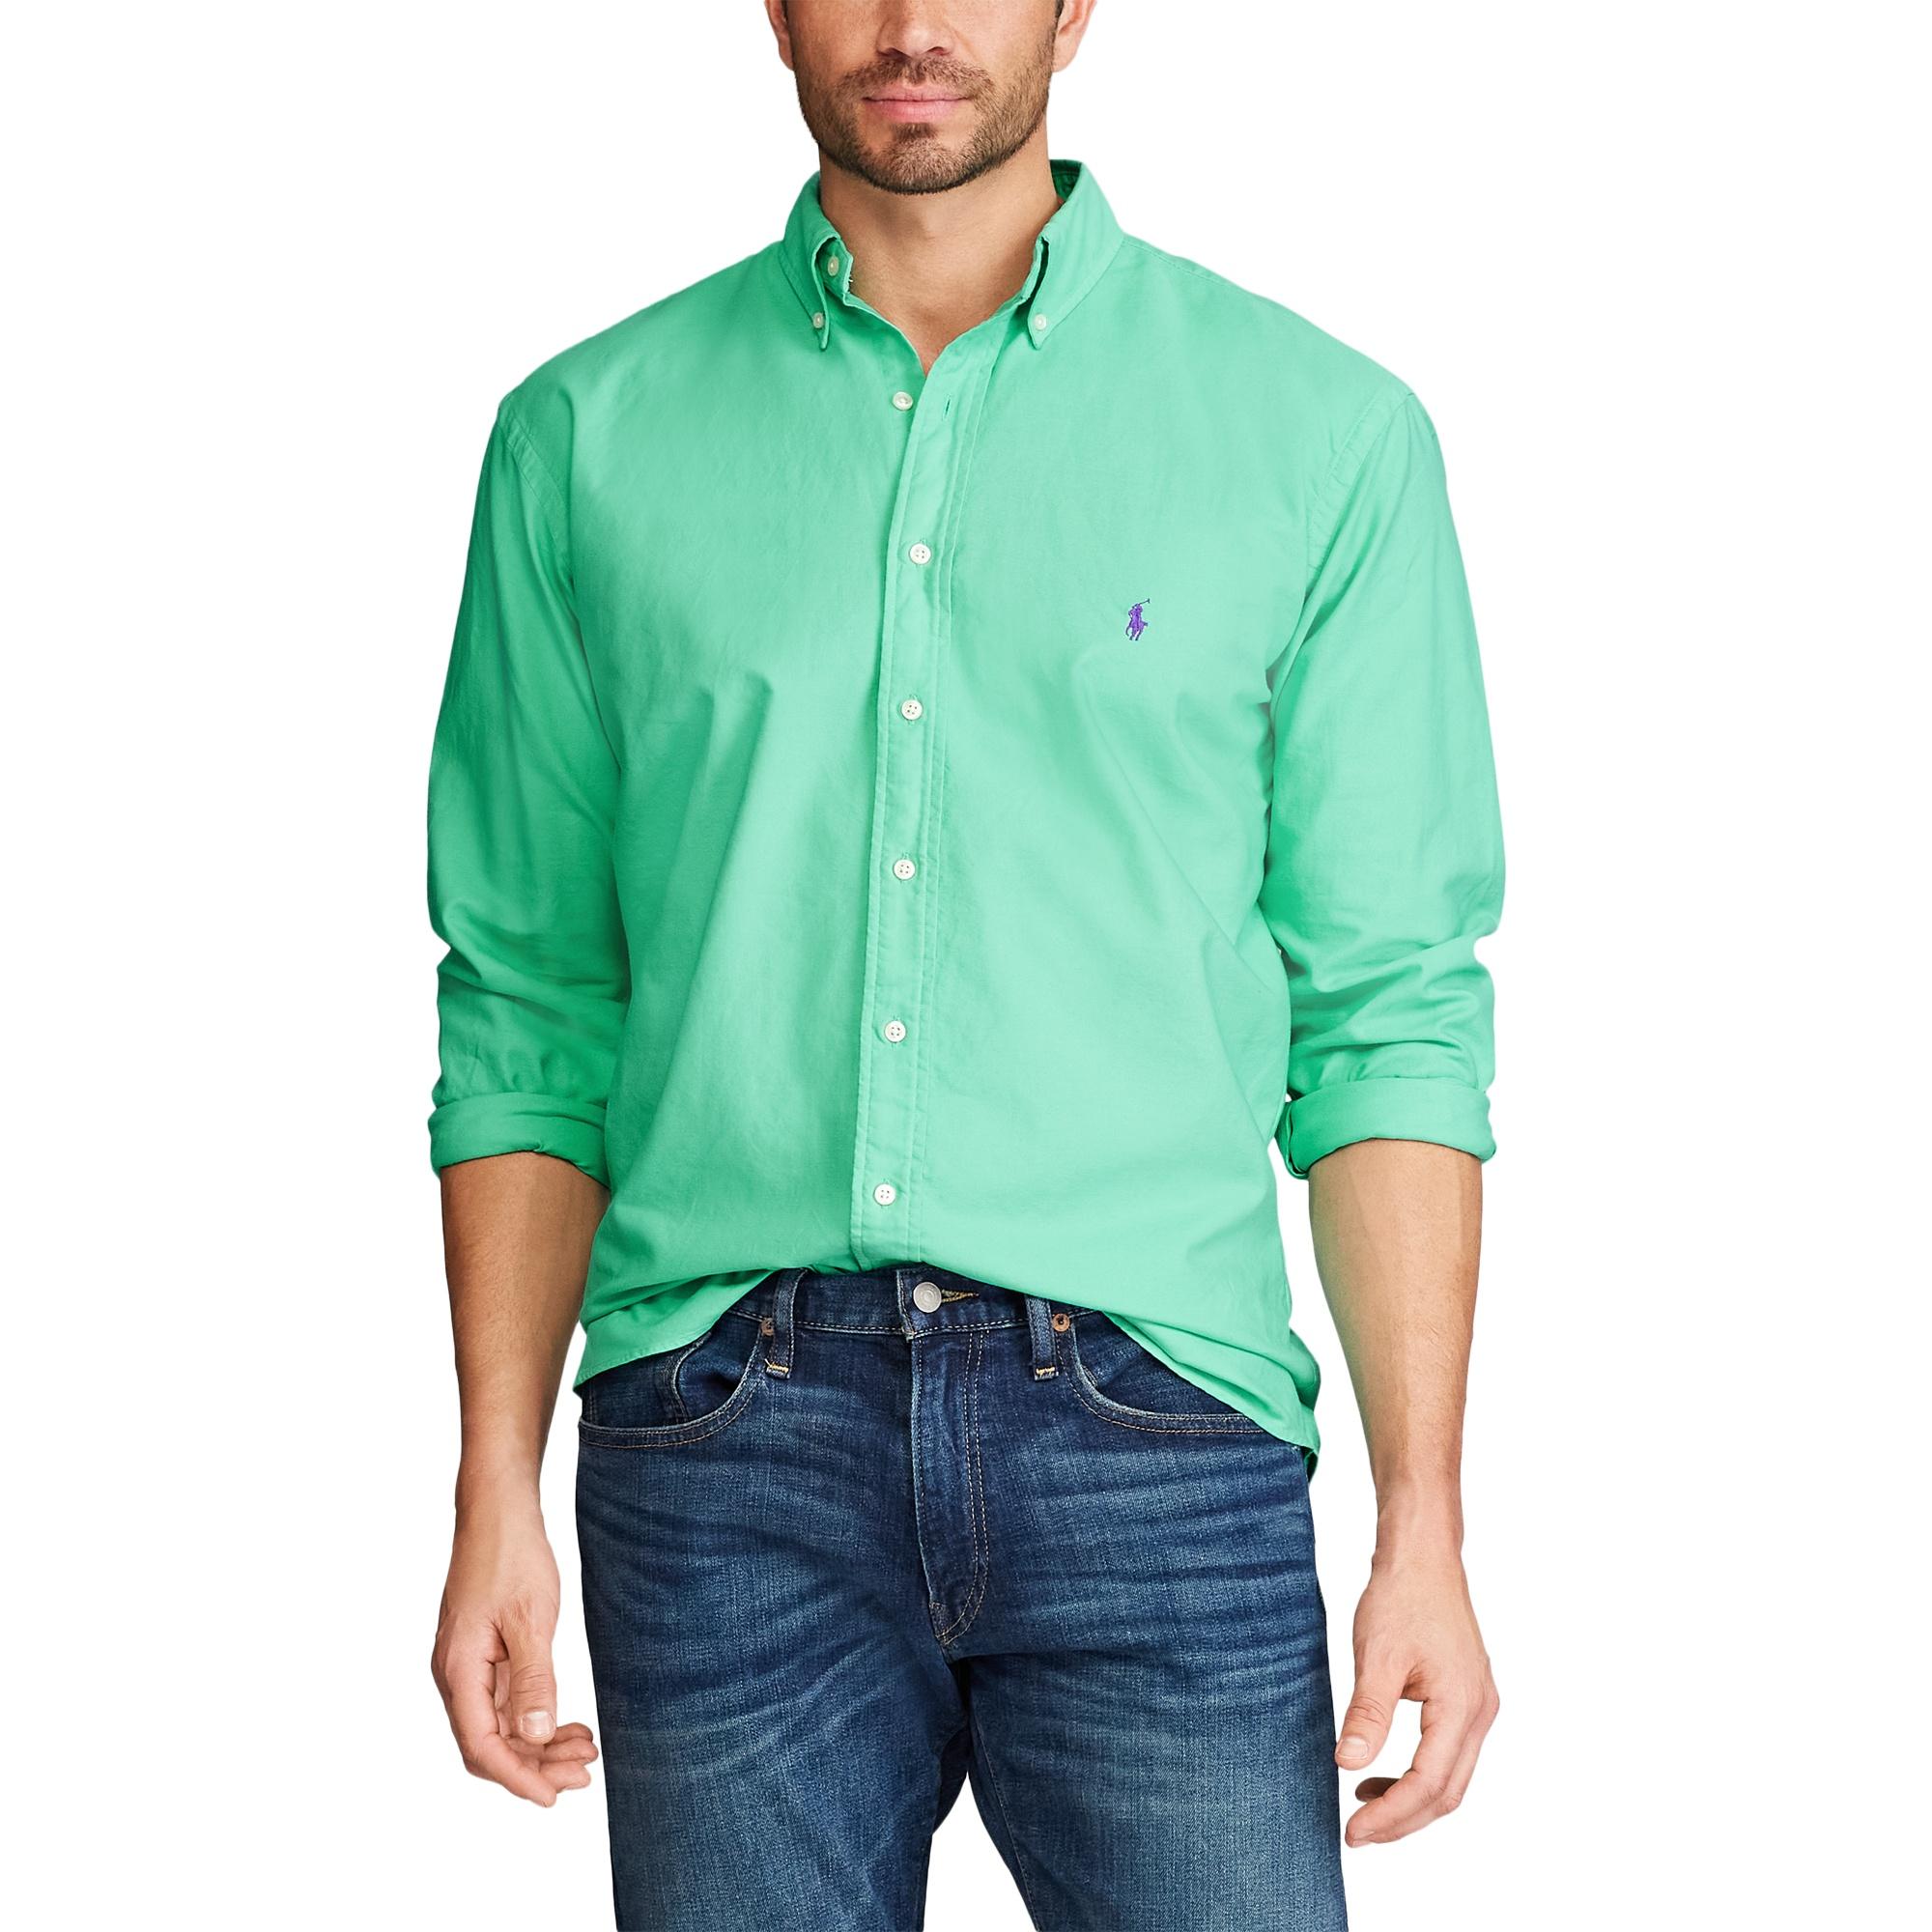 Ralph Lauren Cotton Garment-dyed Oxford Shirt in Green for Men - Lyst